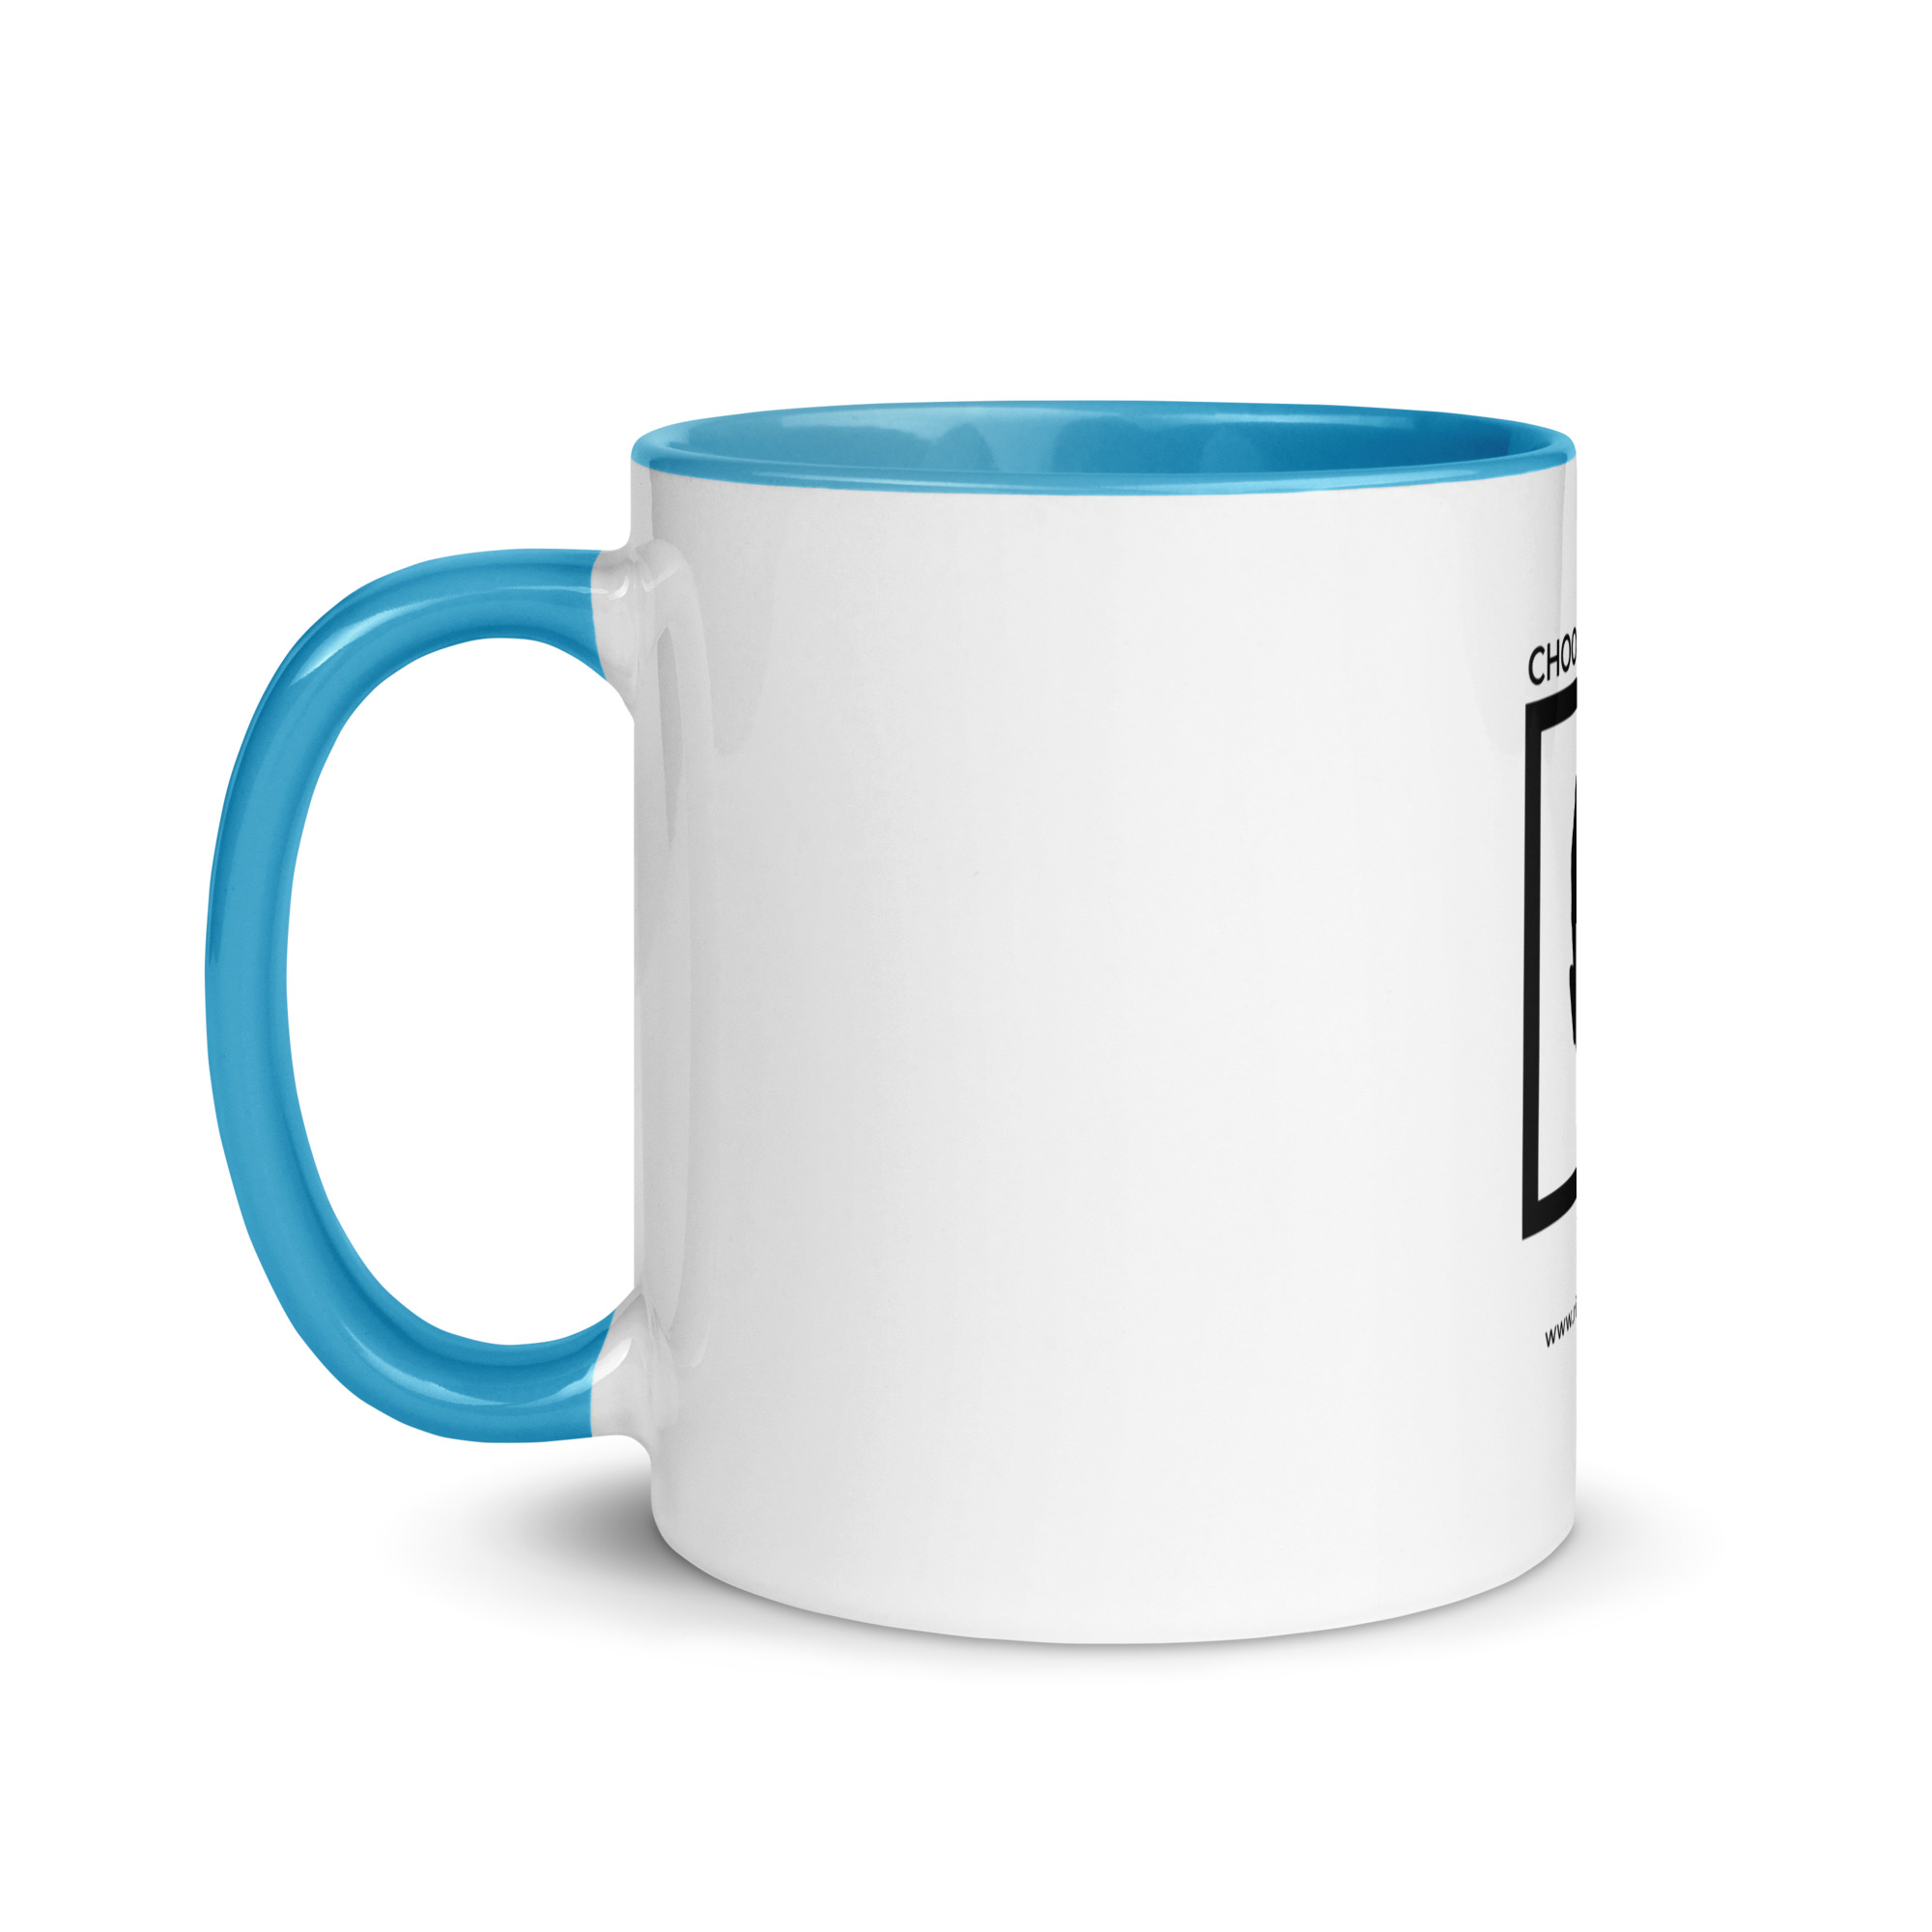 white-ceramic-mug-with-color-inside-blue-11-oz-left-6522a1a4040eb.jpg